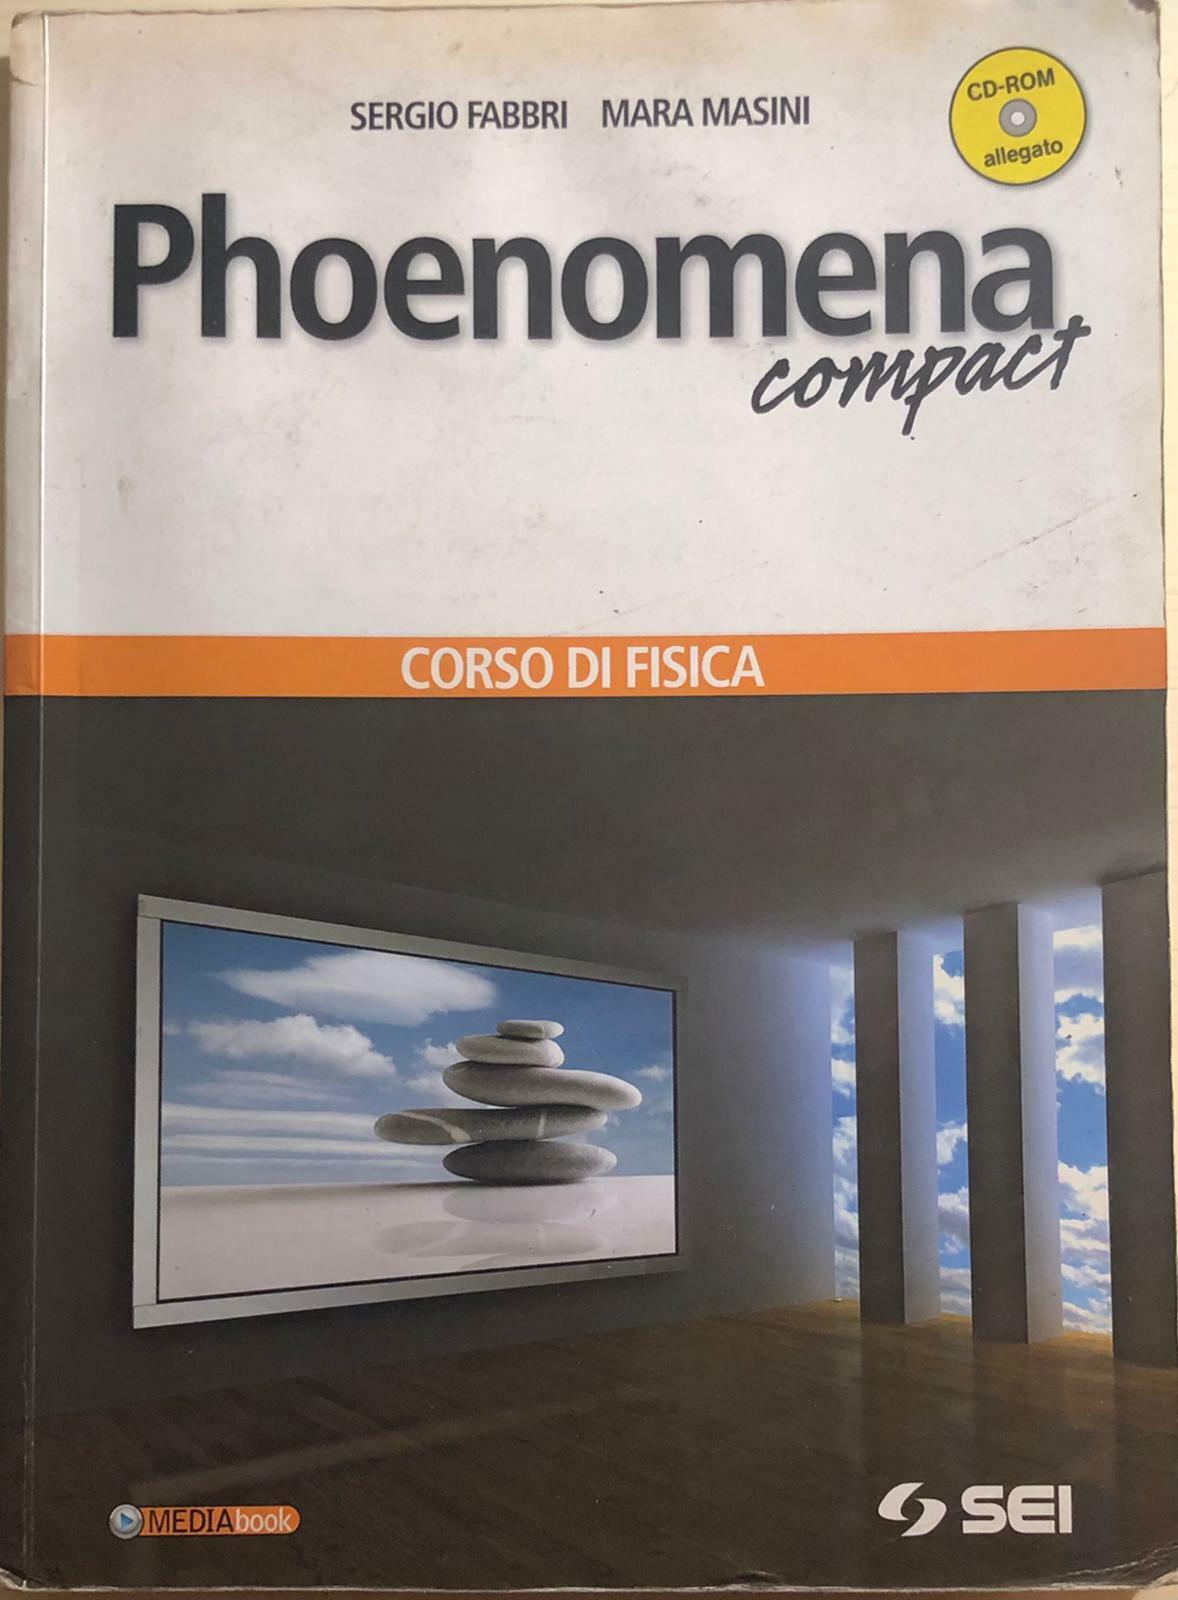 Phoenomena compact, corso di fisica di Aa.vv., 2010, Sei